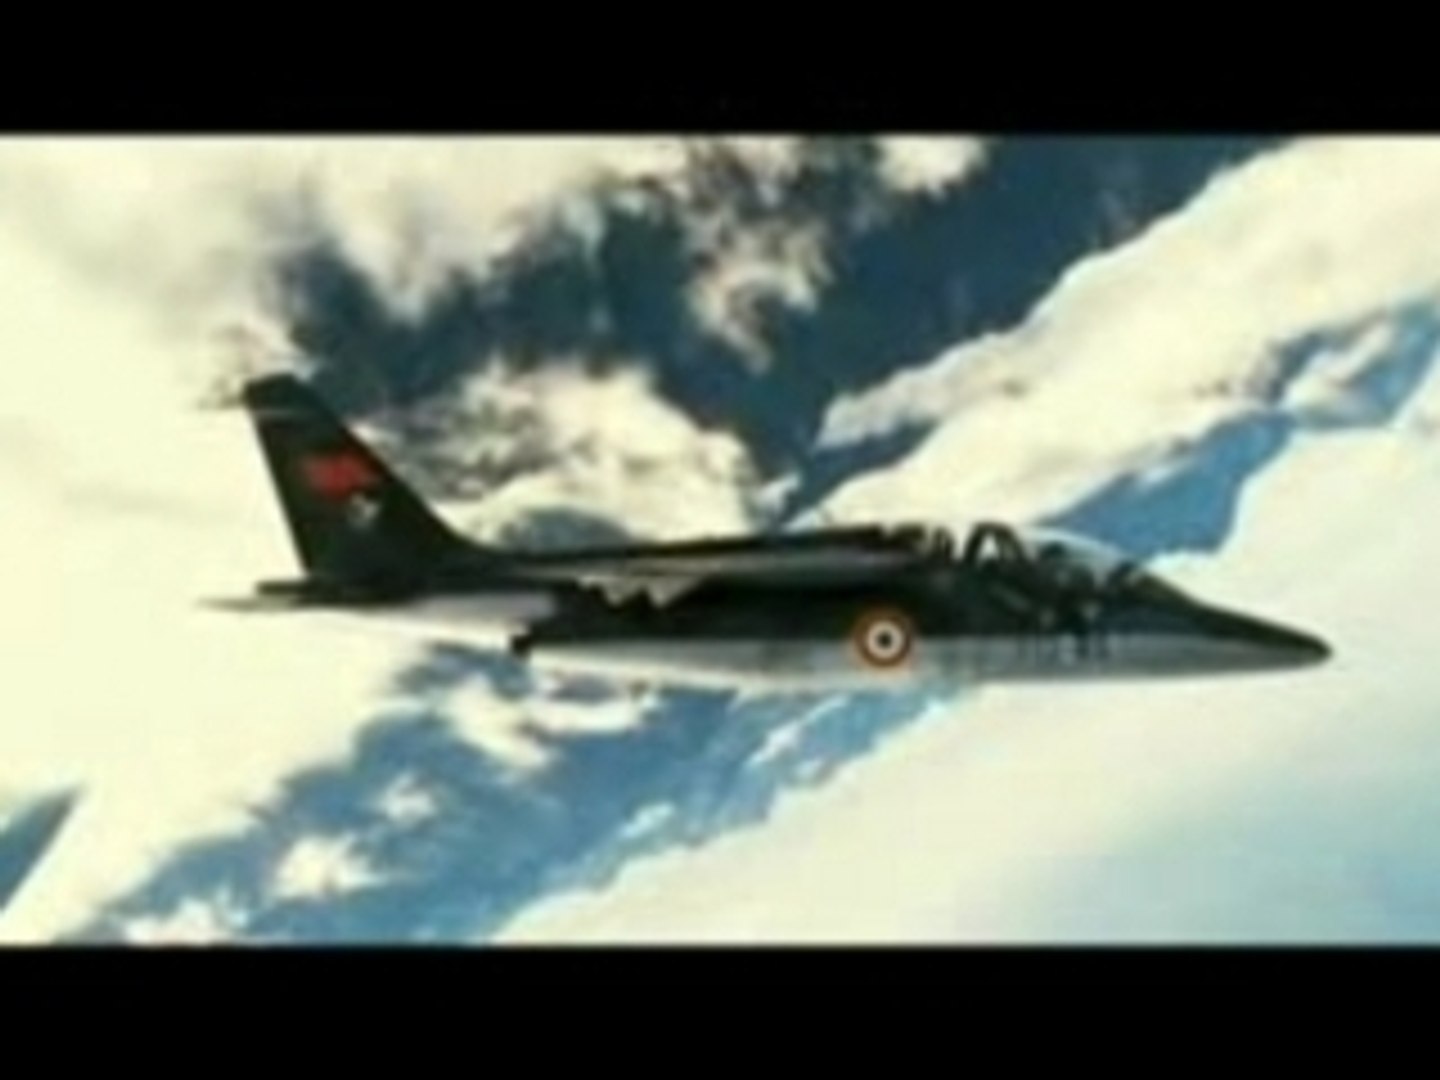 Les Chevaliers du ciel-aviation - Vidéo Dailymotion